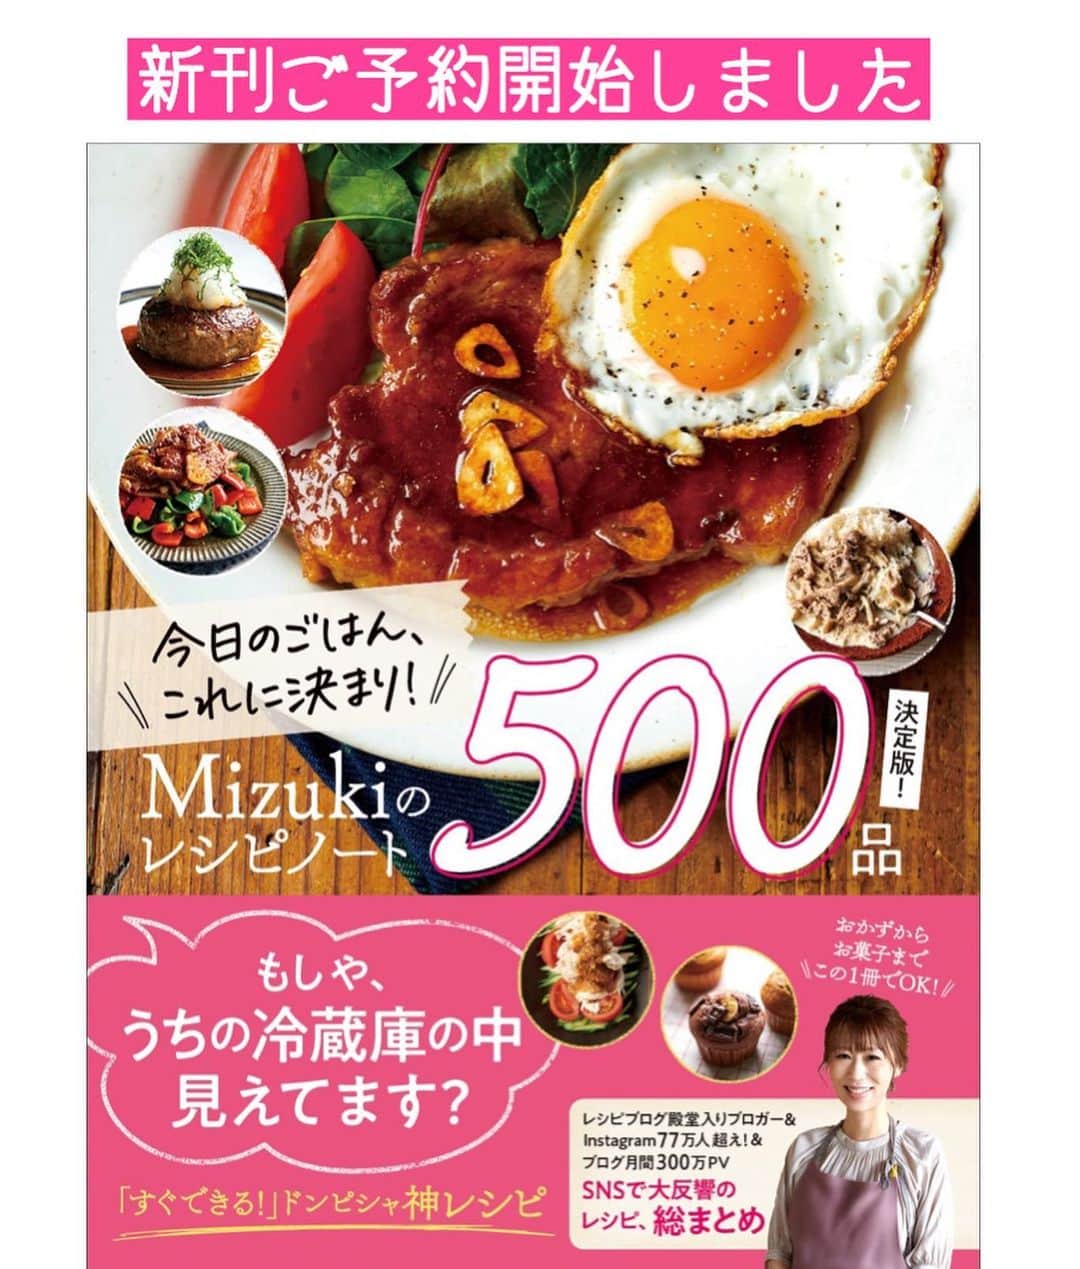 Mizuki【料理ブロガー・簡単レシピ】さんのインスタグラム写真 - (Mizuki【料理ブロガー・簡単レシピ】Instagram)「・ 【#レシピ 】ーーーーーーーーーーーー ごはんがすすむ！豚肉の照り照り焼き ーーーーーーーーーーーーーーーーーー ⁡ ⁡ ⁡ おはようございます(*^^*) ⁡ 今日ご紹介させていただくのは \ 豚肉の照り照り焼き / ⁡ はちみつ&生姜入りの甘辛味で がっつりごはんがすすみますよ〜！ 豚肉を焼いてたれをからめるだけの 超〜簡単レシピです(*´艸`) ⁡ 今回は肩ロース肉を使用しましたが こま、バラ、ロースなど 薄切り肉ならなんでもOK♩ 時間がない時やしんどい時にも よかったらお試し下さいね(*^^*) ⁡ ⁡ ⁡ ＿＿＿＿＿＿＿＿＿＿＿＿＿＿＿＿＿＿＿＿＿ 【2人分】 豚肉(今回は肩ロース薄切り)...180g 薄力粉...適量 サラダ油...小2 ●醤油・酒...各大2 ●砂糖・はちみつ...各大1 ●生姜チューブ...2cm 好みの野菜...適量 ⁡ 1.豚肉を広げて薄く薄力粉をまぶす。●は合わせておく。 2.フライパンにサラダ油を中火で熱し、豚肉を両面色が変わるまで焼く。 3.●を加えて煮からめ、器に盛り、好みの野菜を添える。 ￣￣￣￣￣￣￣￣￣￣￣￣￣￣￣￣￣￣￣￣￣ ⁡ ⁡ ⁡ 《ポイント》 ♦︎豚肉の種類はお好みのものでOK♩(肩ロース薄切り肉、細切れ、バラなど)なるべく広げて粉をまぶして焼いて下さい♩ ♦︎丼にしても美味しいです♩ ♦︎はちみつが入っているので1歳未満のお子さんには食べさせないで下さい☆ ♦︎はちみつは砂糖で代用OKです♩ ⁡ ⁡ ⁡ ⁡ ⁡ ⁡ ⁡ ⁡ \ 新刊予約開始しました /(9月24日発売) 🔹🔹🔹🔹🔹🔹🔹🔹🔹🔹🔹🔹 今日のごはんこれに決まり！ #Mizukiのレシピノート 決定版 500品 🔹🔹🔹🔹🔹🔹🔹🔹🔹🔹🔹🔹 ⁡ 総レシピ6000点の中からレシピを厳選！ まさかの【500レシピ掲載】しました⭐️ (もはや辞典...) ⁡ 肉や魚のメインおかずはもちろん 副菜、丼、麺、スープ、お菓子 ハレの日のレシピ、鍋のレシピまで 全てこの一冊で完結！！ ⁡ ⁡ 🎁新刊予約でエプロンが当たる🎁 プレゼントキャンペーン実施中 ￣￣￣￣￣￣￣￣￣￣￣￣￣￣￣￣￣￣￣￣￣ 【応募方法】 ❶1枚目に表紙画像 2枚目にAmazonで予約したことがわかる画像 (どちらもスクショでOK)を貼りつける。 ❷ハッシュタグ【#Mizukiのレシピノート 】 をつけて投稿！ ￣￣￣￣￣￣￣￣￣￣￣￣￣￣￣￣￣￣￣￣￣￣ ⁡ ⁡ ⁡ ⁡ ⁡ ＿＿＿＿＿＿＿＿＿＿＿＿＿＿＿＿ 🟥YouTube 料理動画配信中🟥 ￣￣￣￣￣￣￣￣￣￣￣￣￣￣￣￣ 料理とお菓子の簡単レシピを ご紹介しています☺️💓 ⁡ 【奇跡のキッチン】で検索🔍 (ハイライトからも飛べます✨) ￣￣￣￣￣￣￣￣￣￣￣￣￣￣￣￣ ⁡ ⁡ ⁡ ＿＿＿＿＿＿＿＿＿＿＿＿＿＿＿＿ 🔶🔶recipe book🔶🔶 ￣￣￣￣￣￣￣￣￣￣￣￣￣￣￣￣ ホケミレシピの決定版♩ \はじめてでも失敗しない/ 📙#ホットケーキミックスのお菓子 ⁡ NHKまる得マガジンテキスト☆ #ホットケーキミックス で ⁡ 📗絶品おやつ&意外なランチ ⁡ しんどくない献立、考えました♩ \𝟣𝟧分でいただきます/ 📕#Mizukiの2品献立 ⁡ 和食をもっとカジュアルに♩ \毎日のごはんがラクになる/ 📘#Mizukiの今どき和食  ＿＿＿＿＿＿＿＿＿＿＿＿＿＿＿＿＿ ⁡ ⁡ ⁡ ⁡ #豚肉の照り照り焼きm #豚肉 #照り焼き #甘辛 #mizuki #簡単レシピ #時短レシピ #節約レシピ #料理 #料理初心者  #時短ごはん #節約ごはん #フーディーテーブル #おうちごはん #デリスタグラマー #おうちごはんlover #料理好きな人と繋がりたい #写真好きな人と繋がりたい #foodpick#cooking#recipe」9月1日 8時57分 - mizuki_31cafe